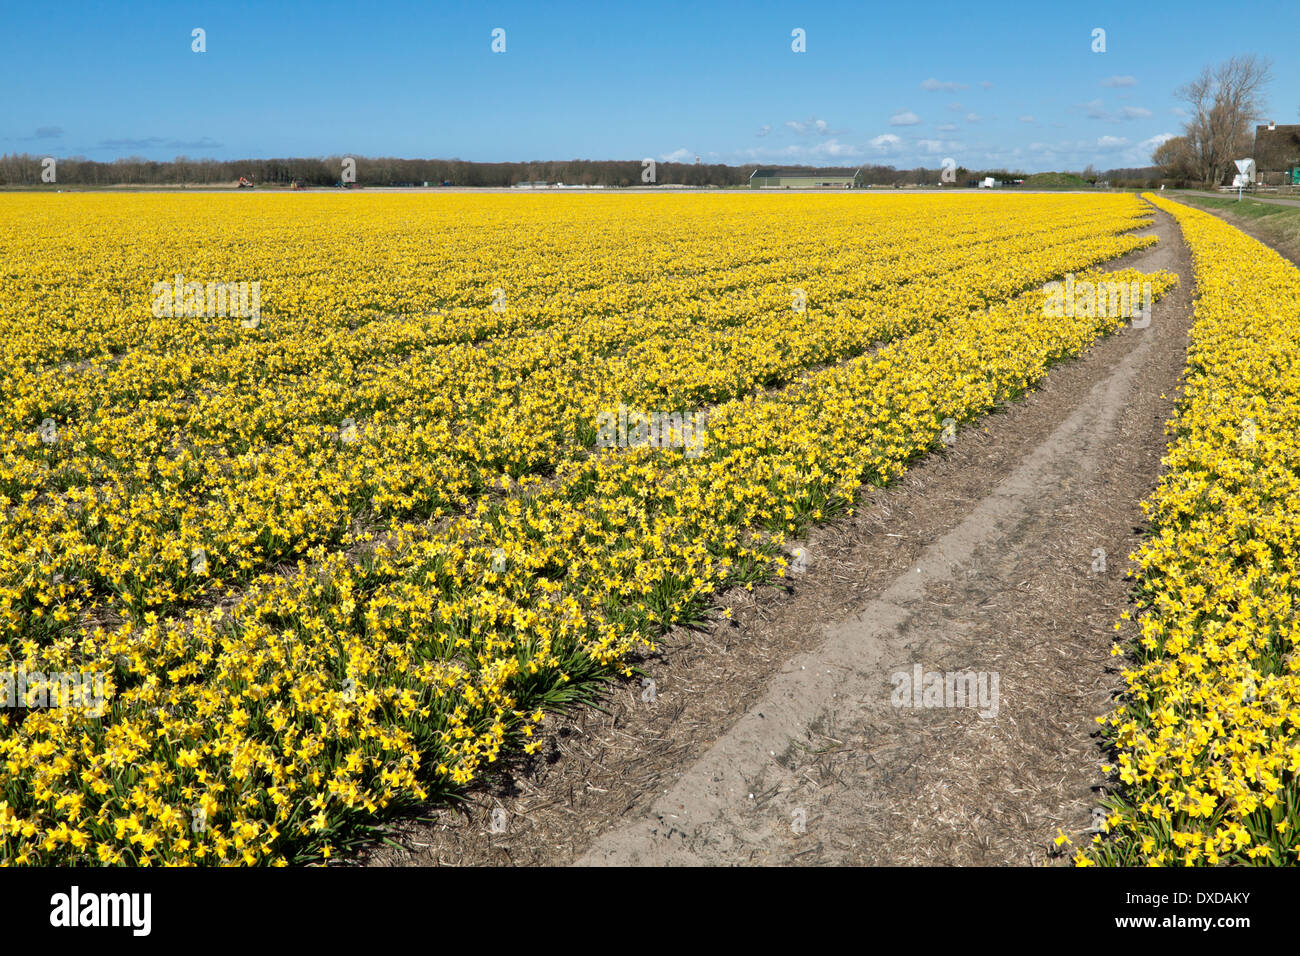 Printemps : un grand angle de visualisation des champs de tulipes de jonquilles, Noordwijkerhout, Hollande méridionale, Pays-Bas. Banque D'Images